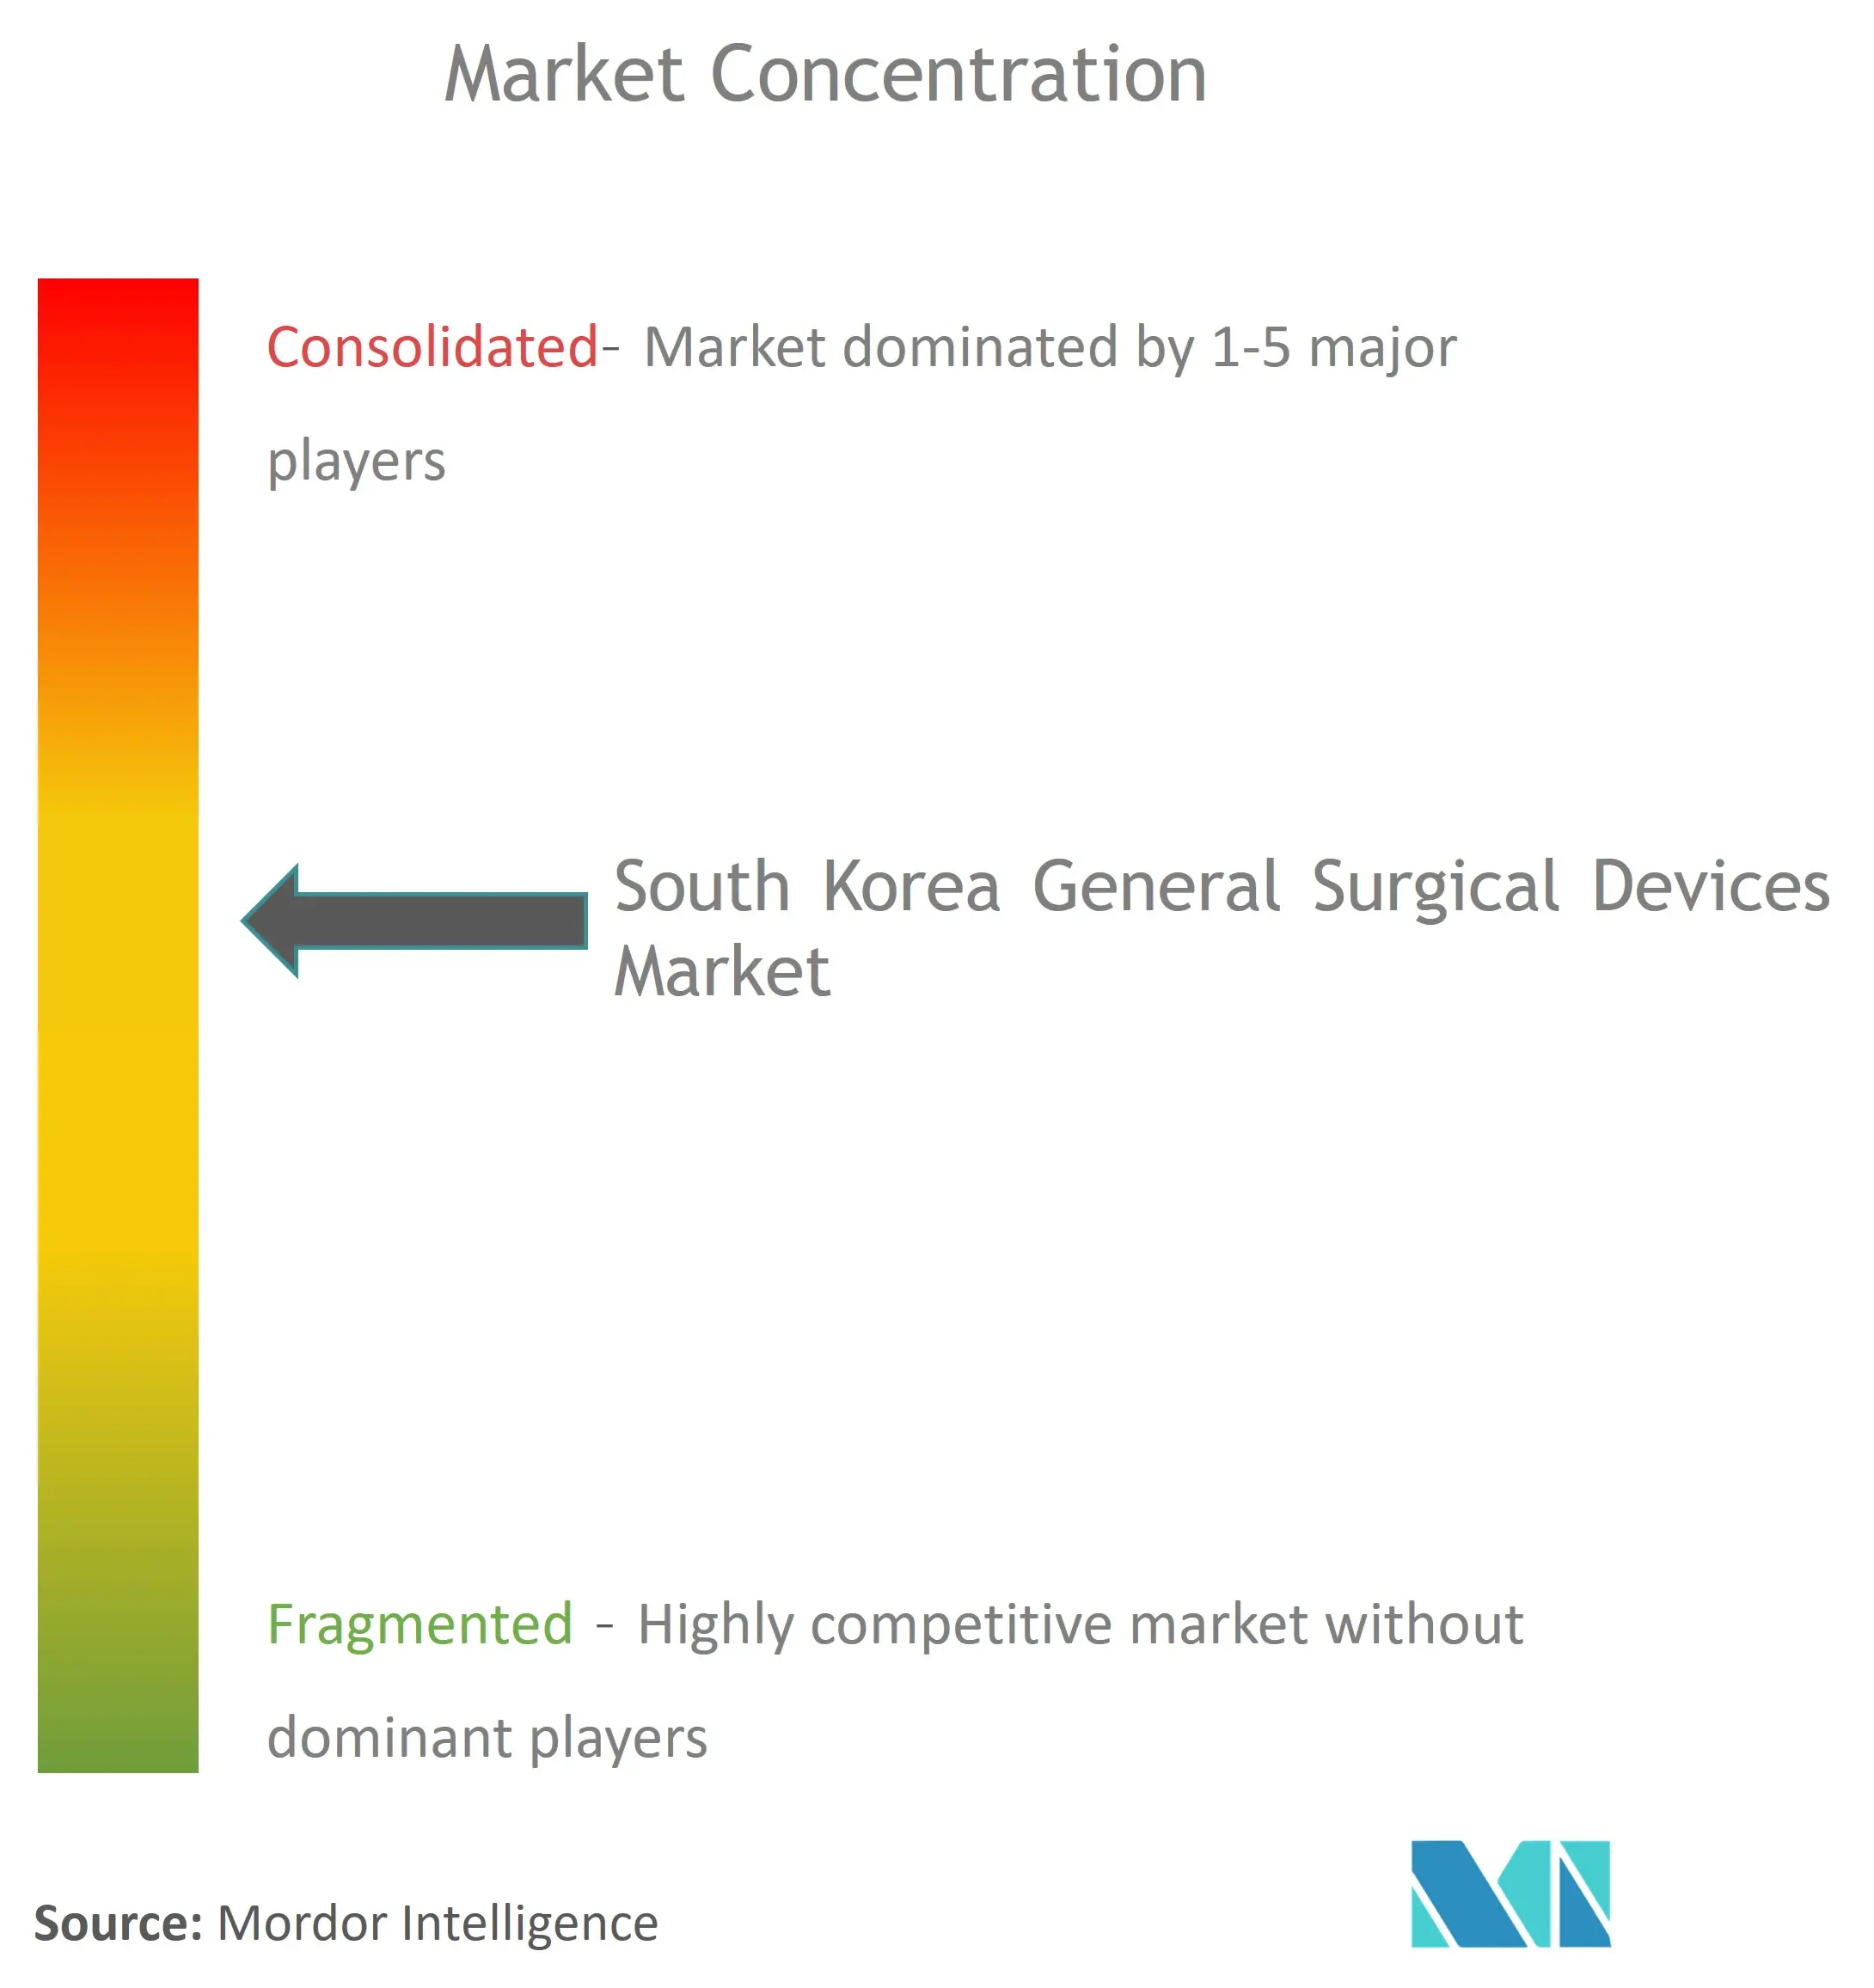 韓国の一般外科用機器市場集中度.png